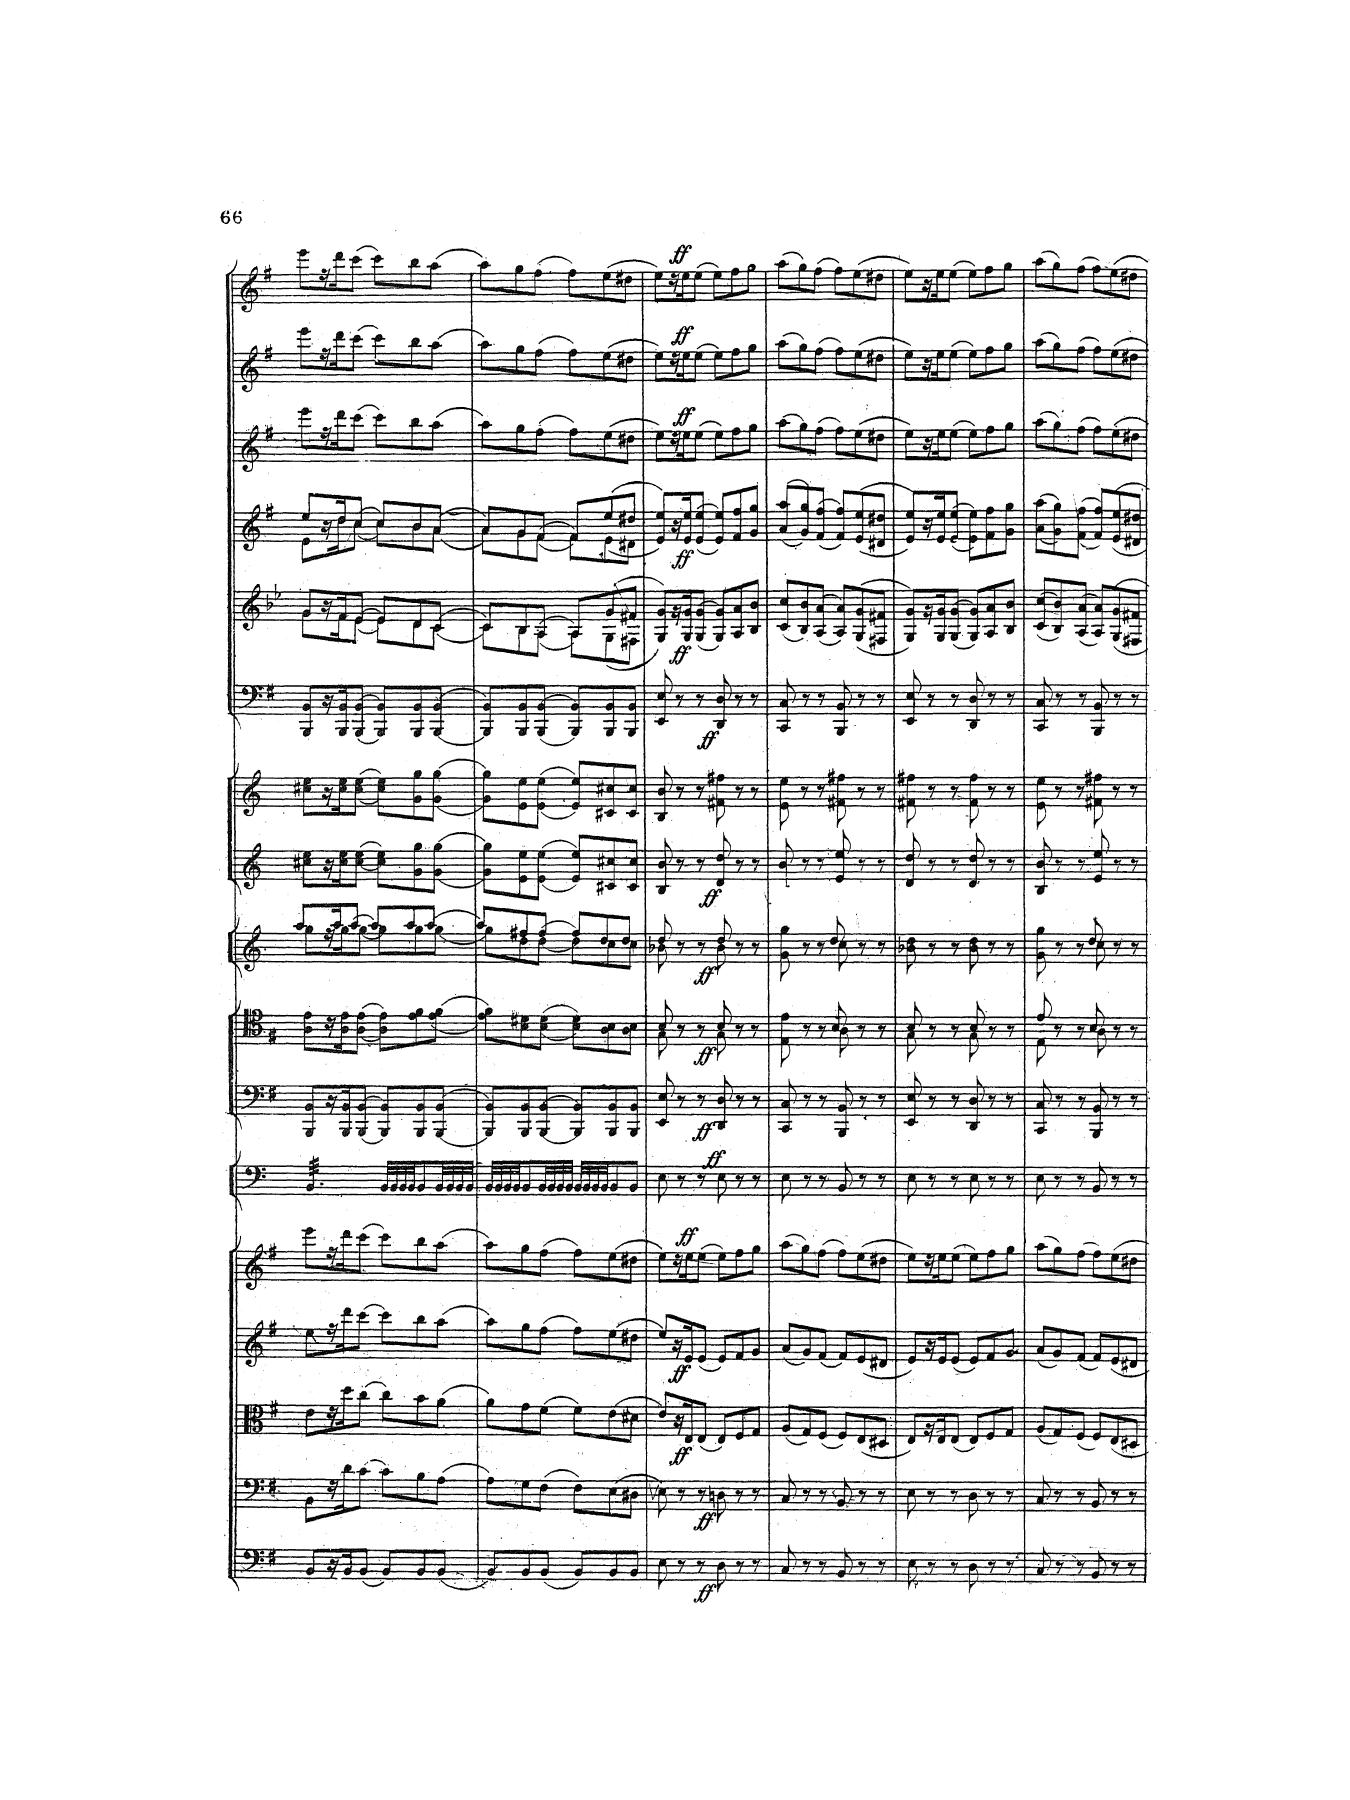 tchaikovsky-symphony-5-1st-mvmt-02.jpg